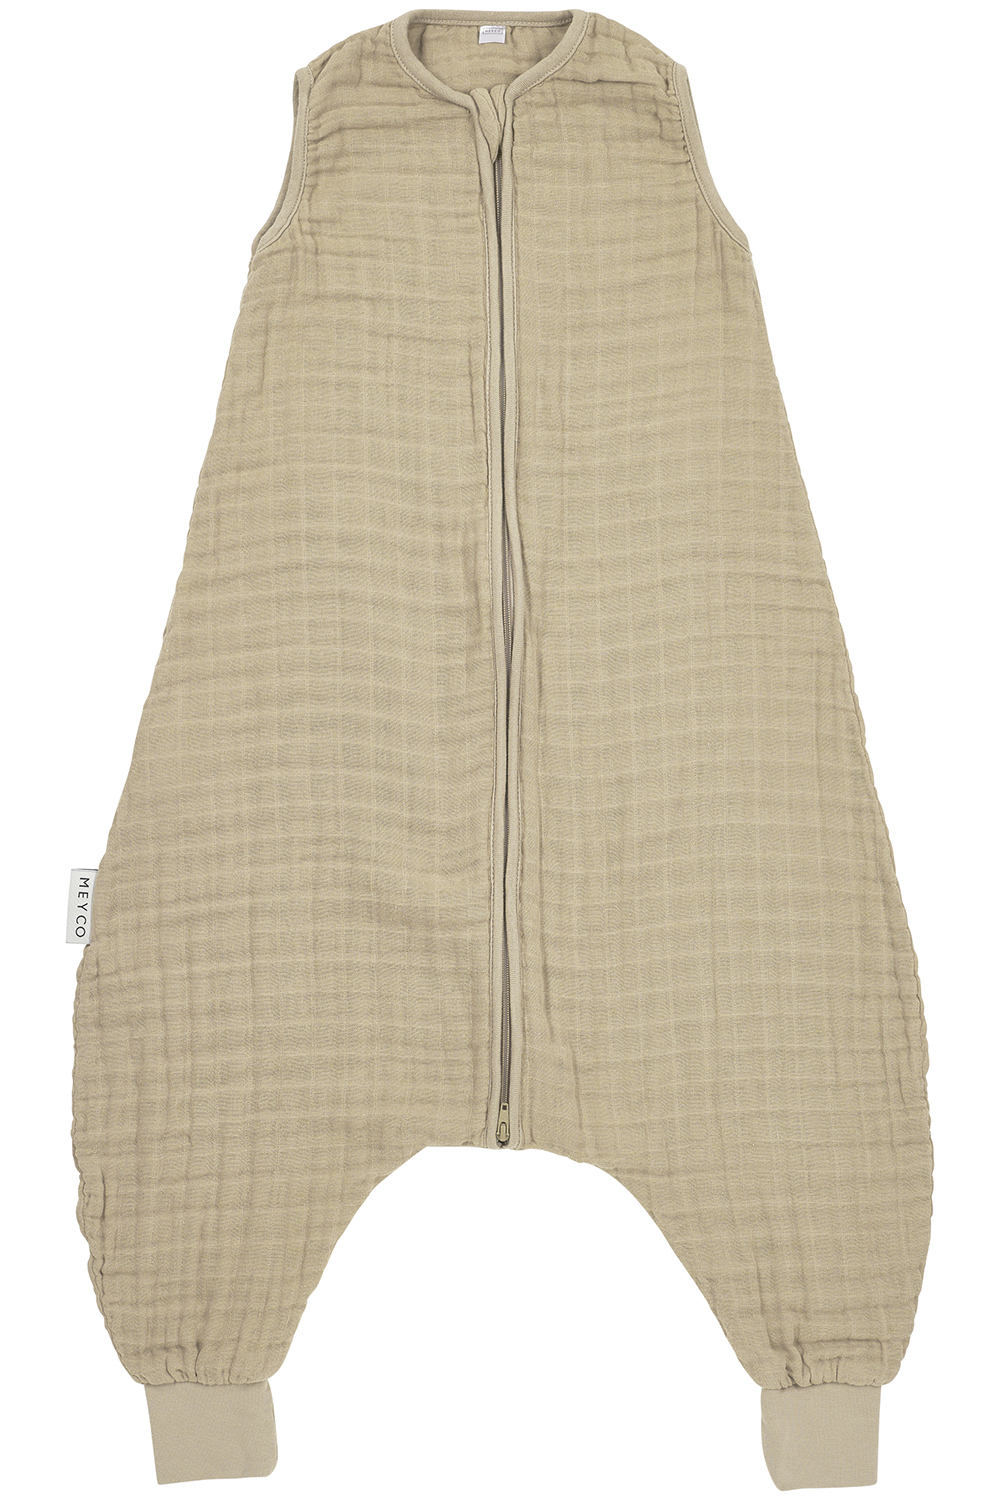 Baby zomer slaapoverall jumper pre-washed hydrofiel Uni - sand - 104cm